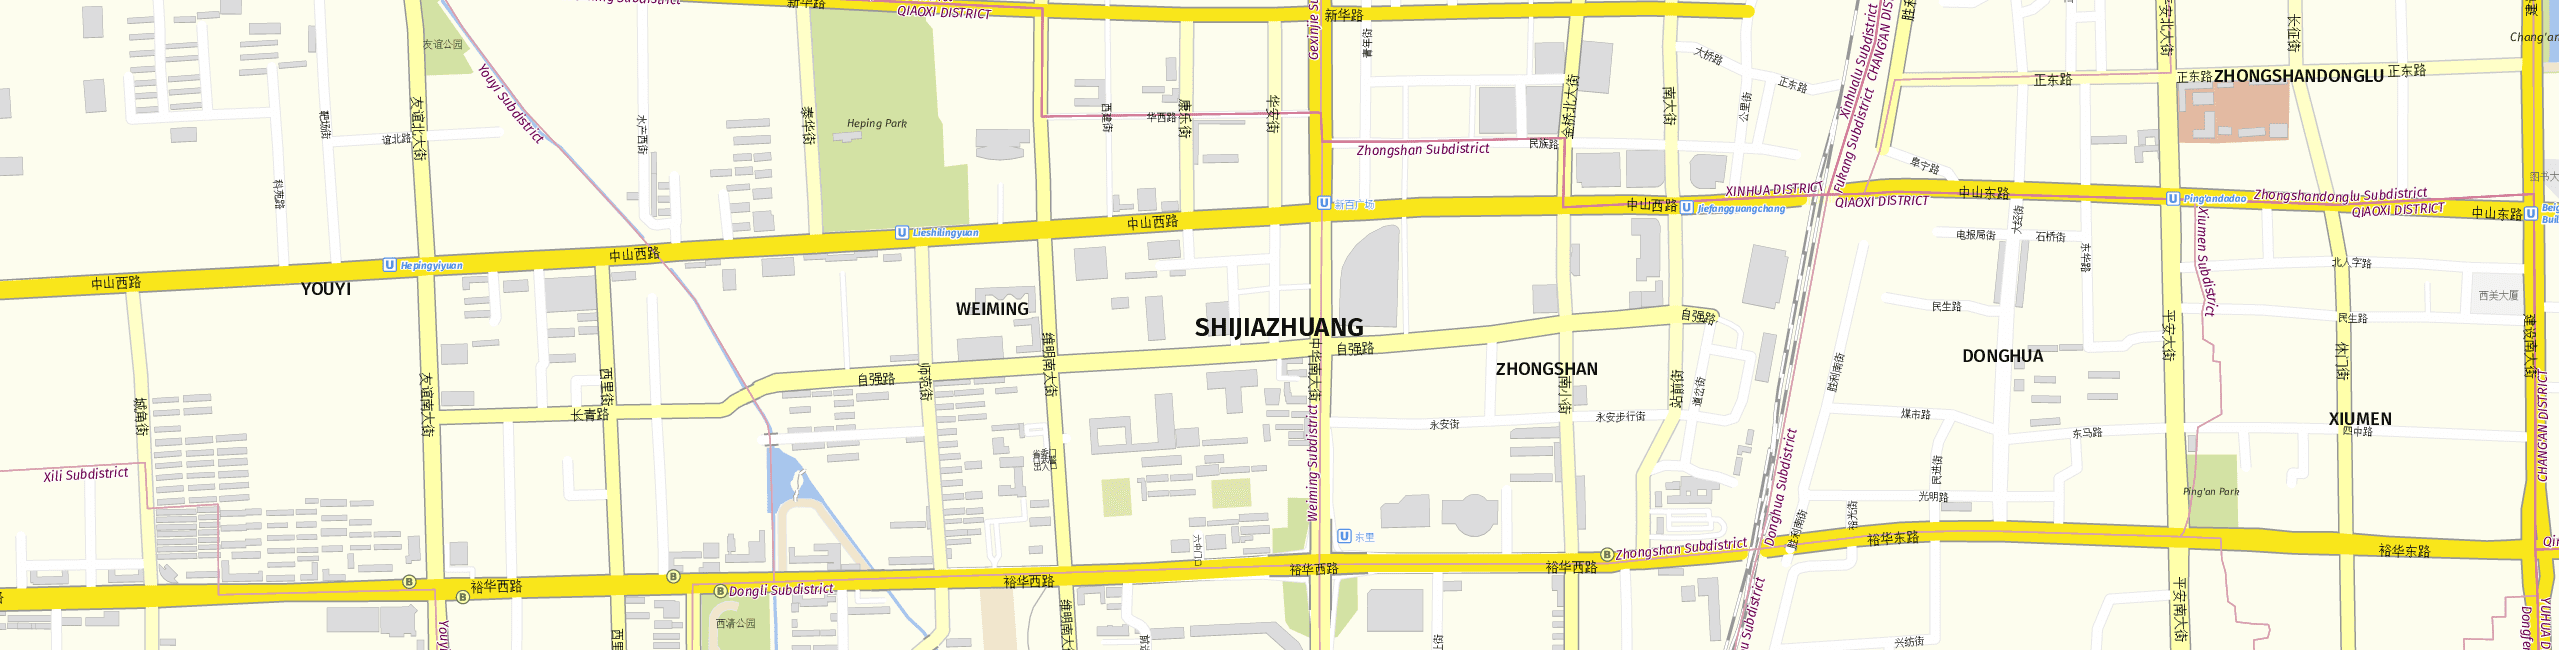 Stadtplan Shijiazhuang zum Downloaden.